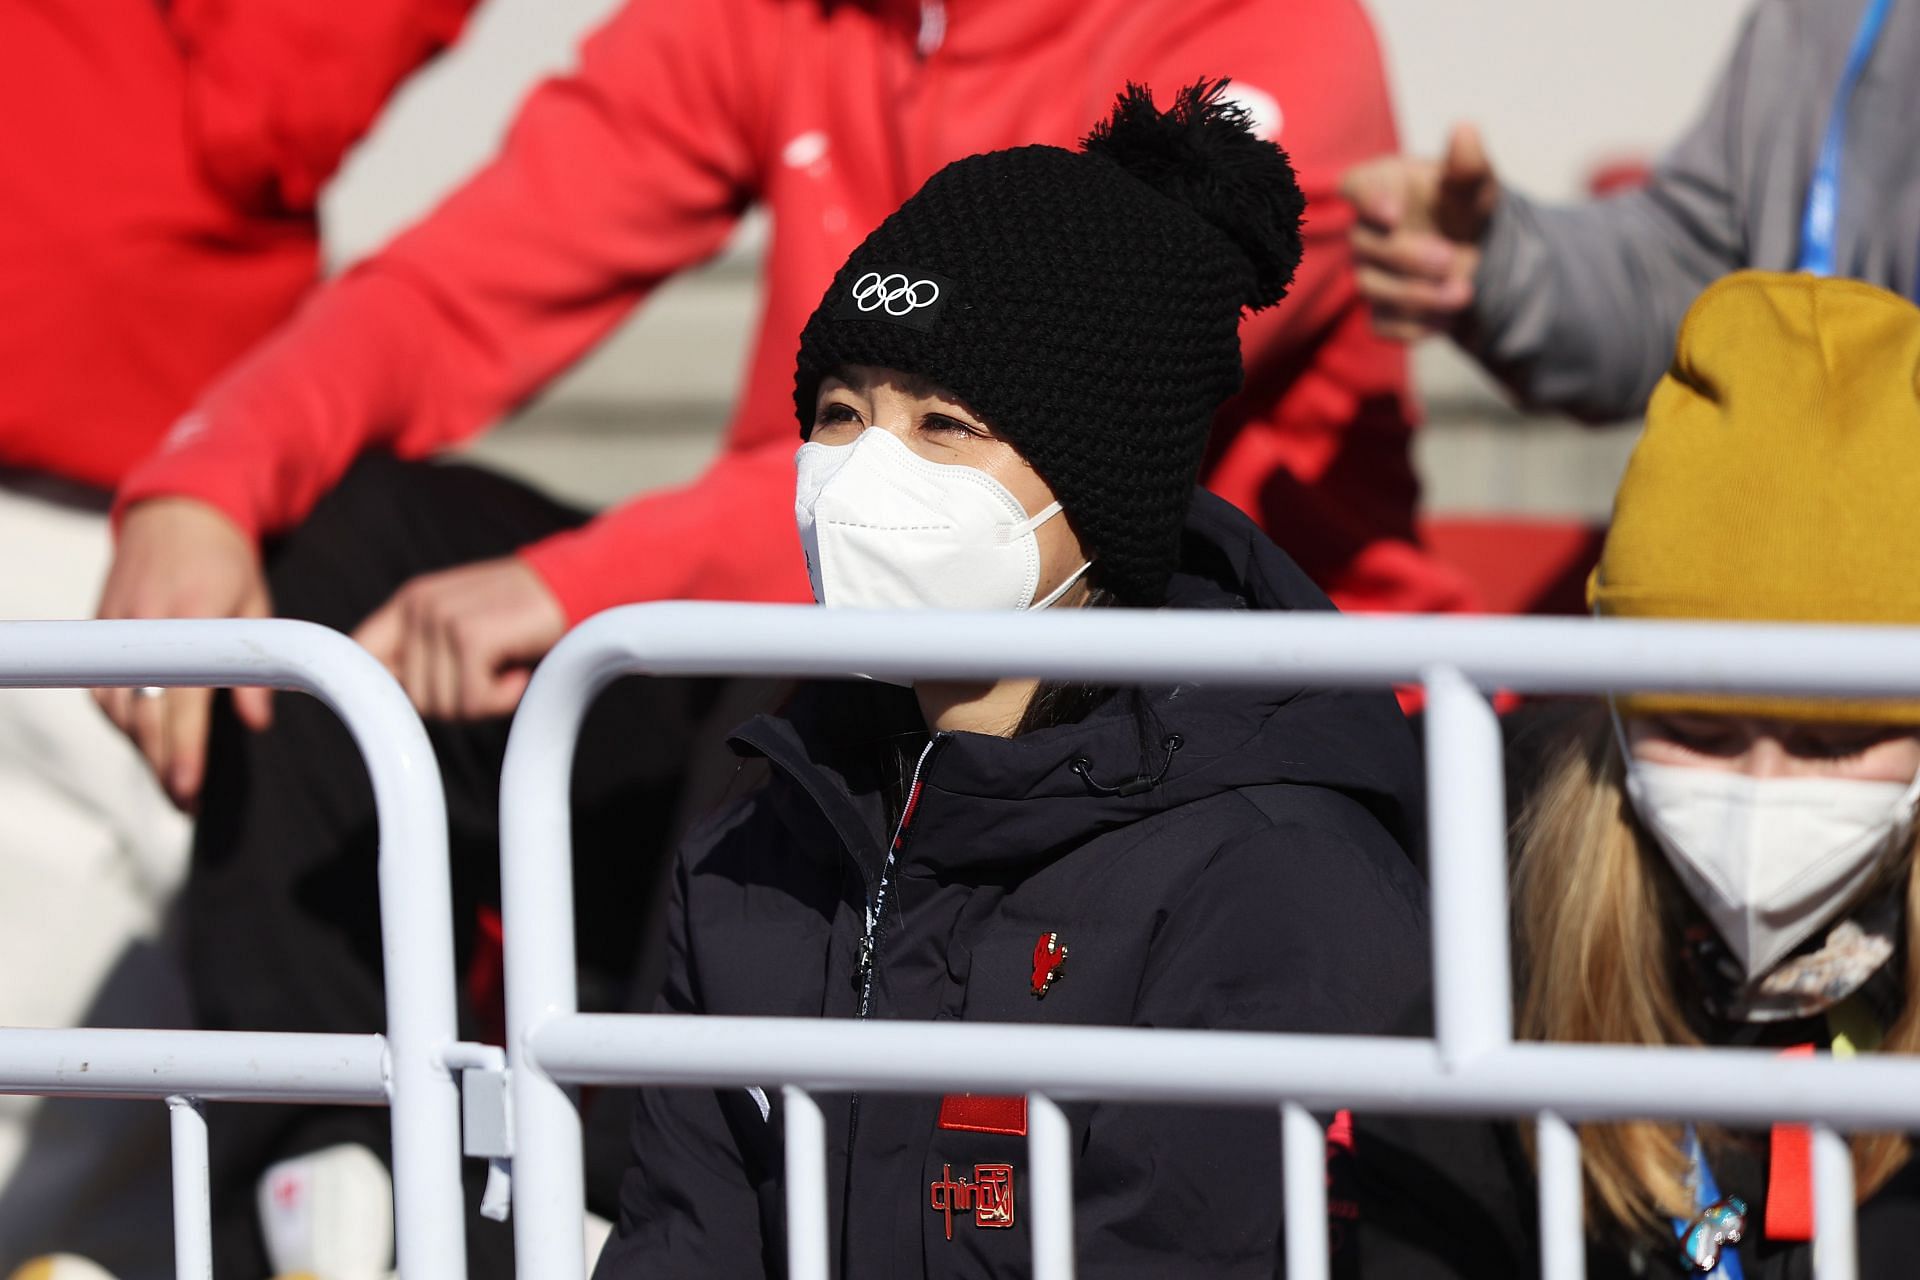 Peng Shuai watches the Winter Olympics in Beijing